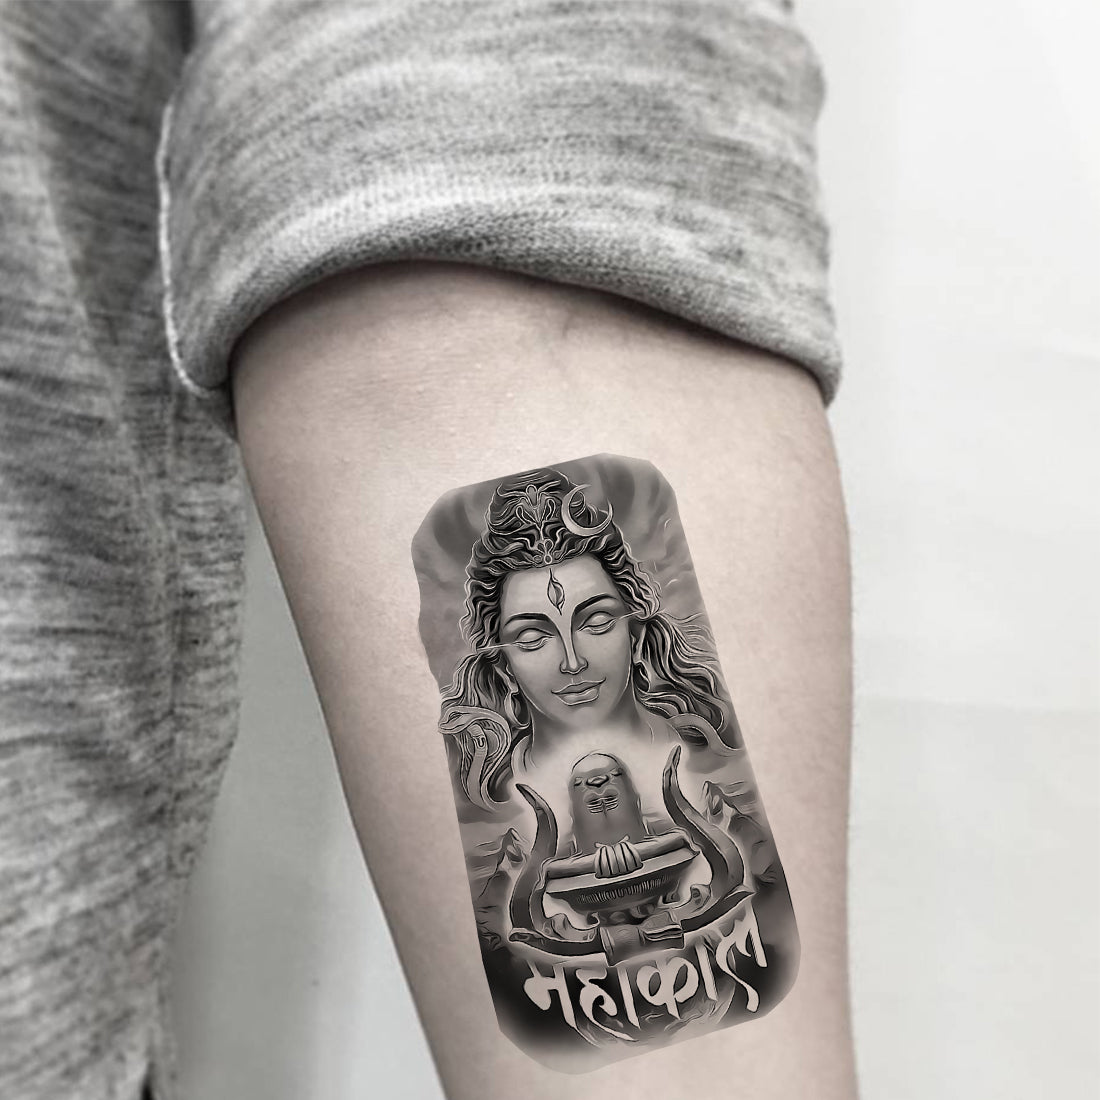 Pin by sandilya ivaturi on My saves | Tattoos, Fish tattoos, Jesus fish  tattoo